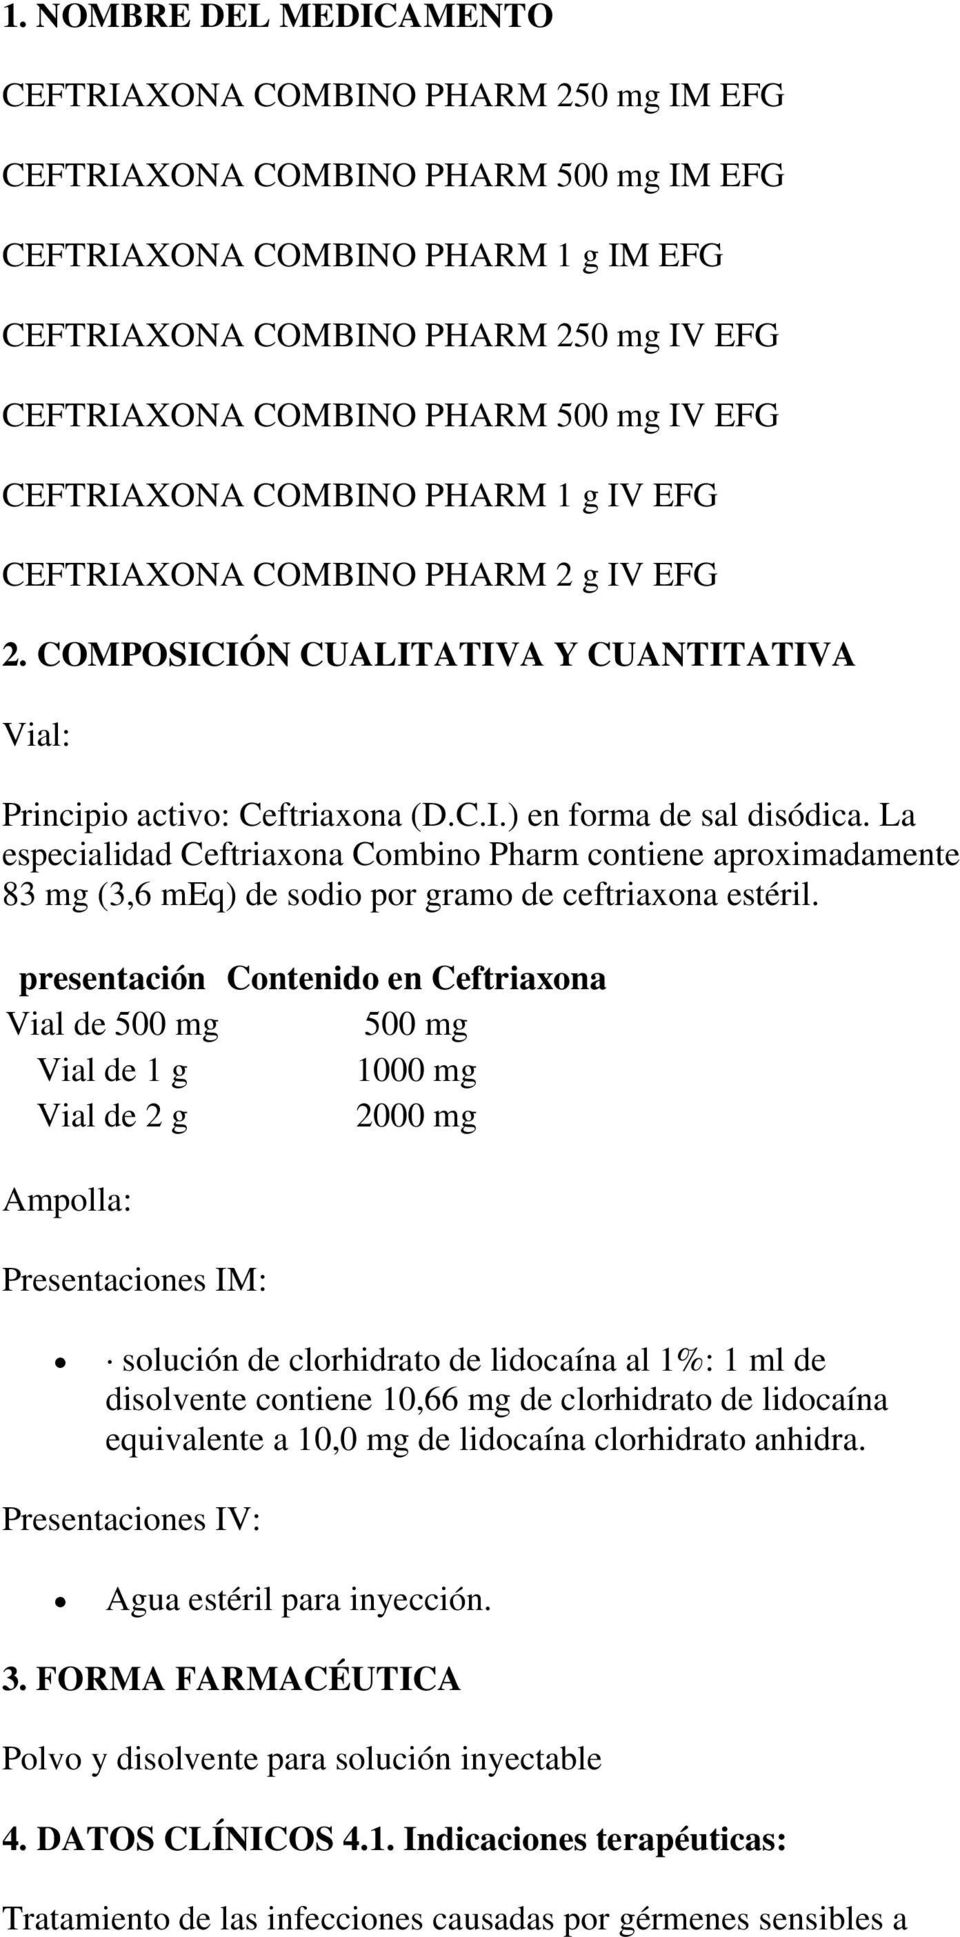 La especialidad Ceftriaxona Combino Pharm contiene aproximadamente 83 mg (3,6 meq) de sodio por gramo de ceftriaxona estéril.